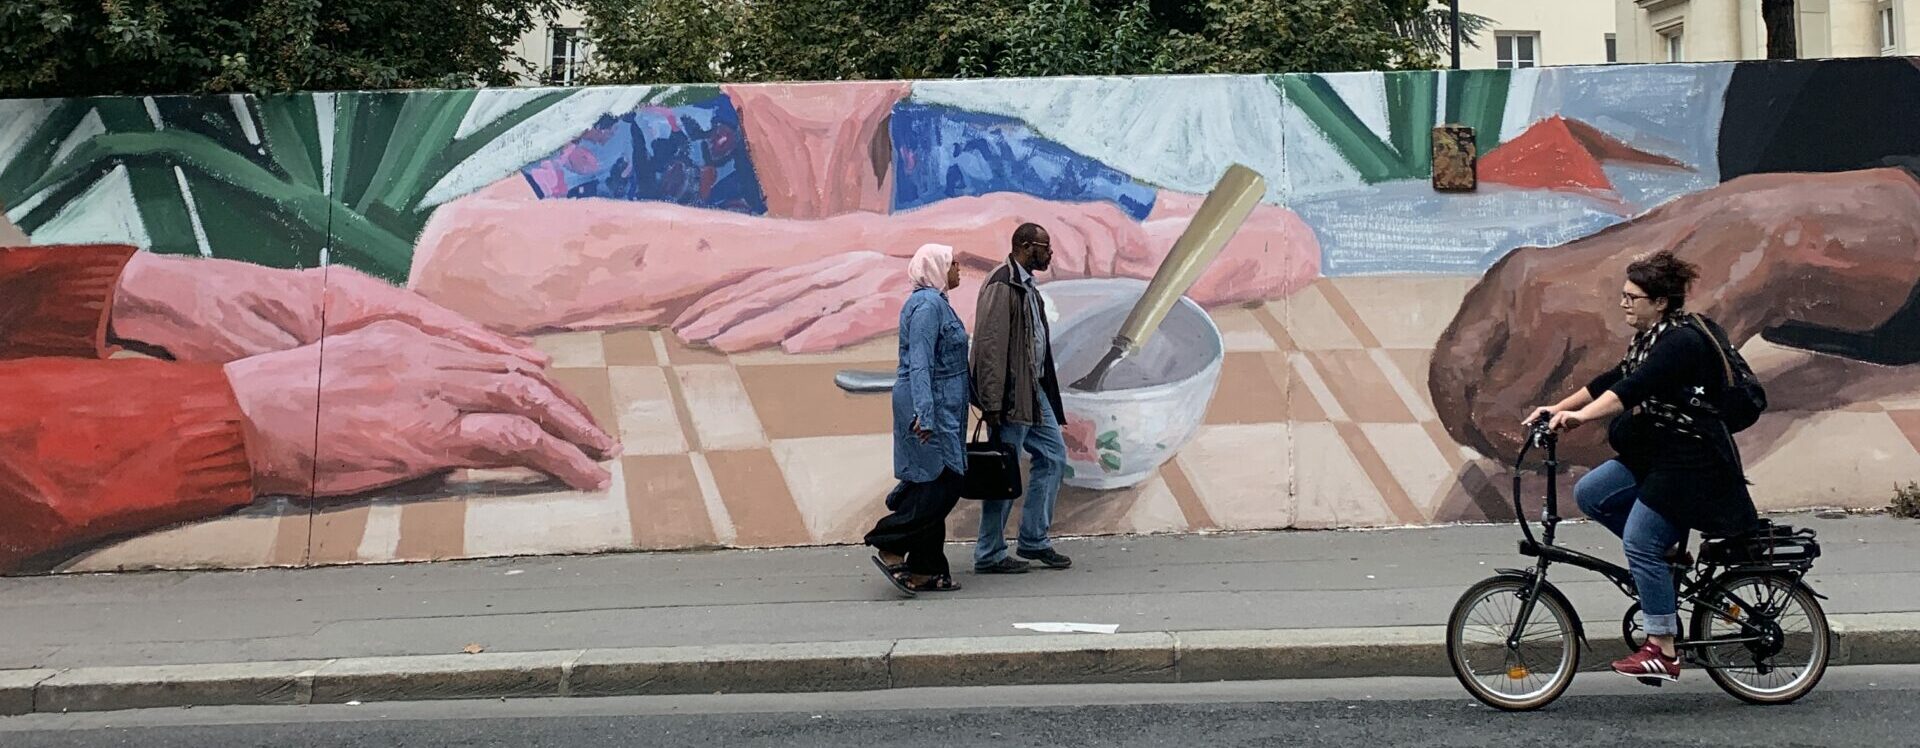 Une nouvelle fresque street art signée Virginia Bersabé, à voir à Ménilmontant